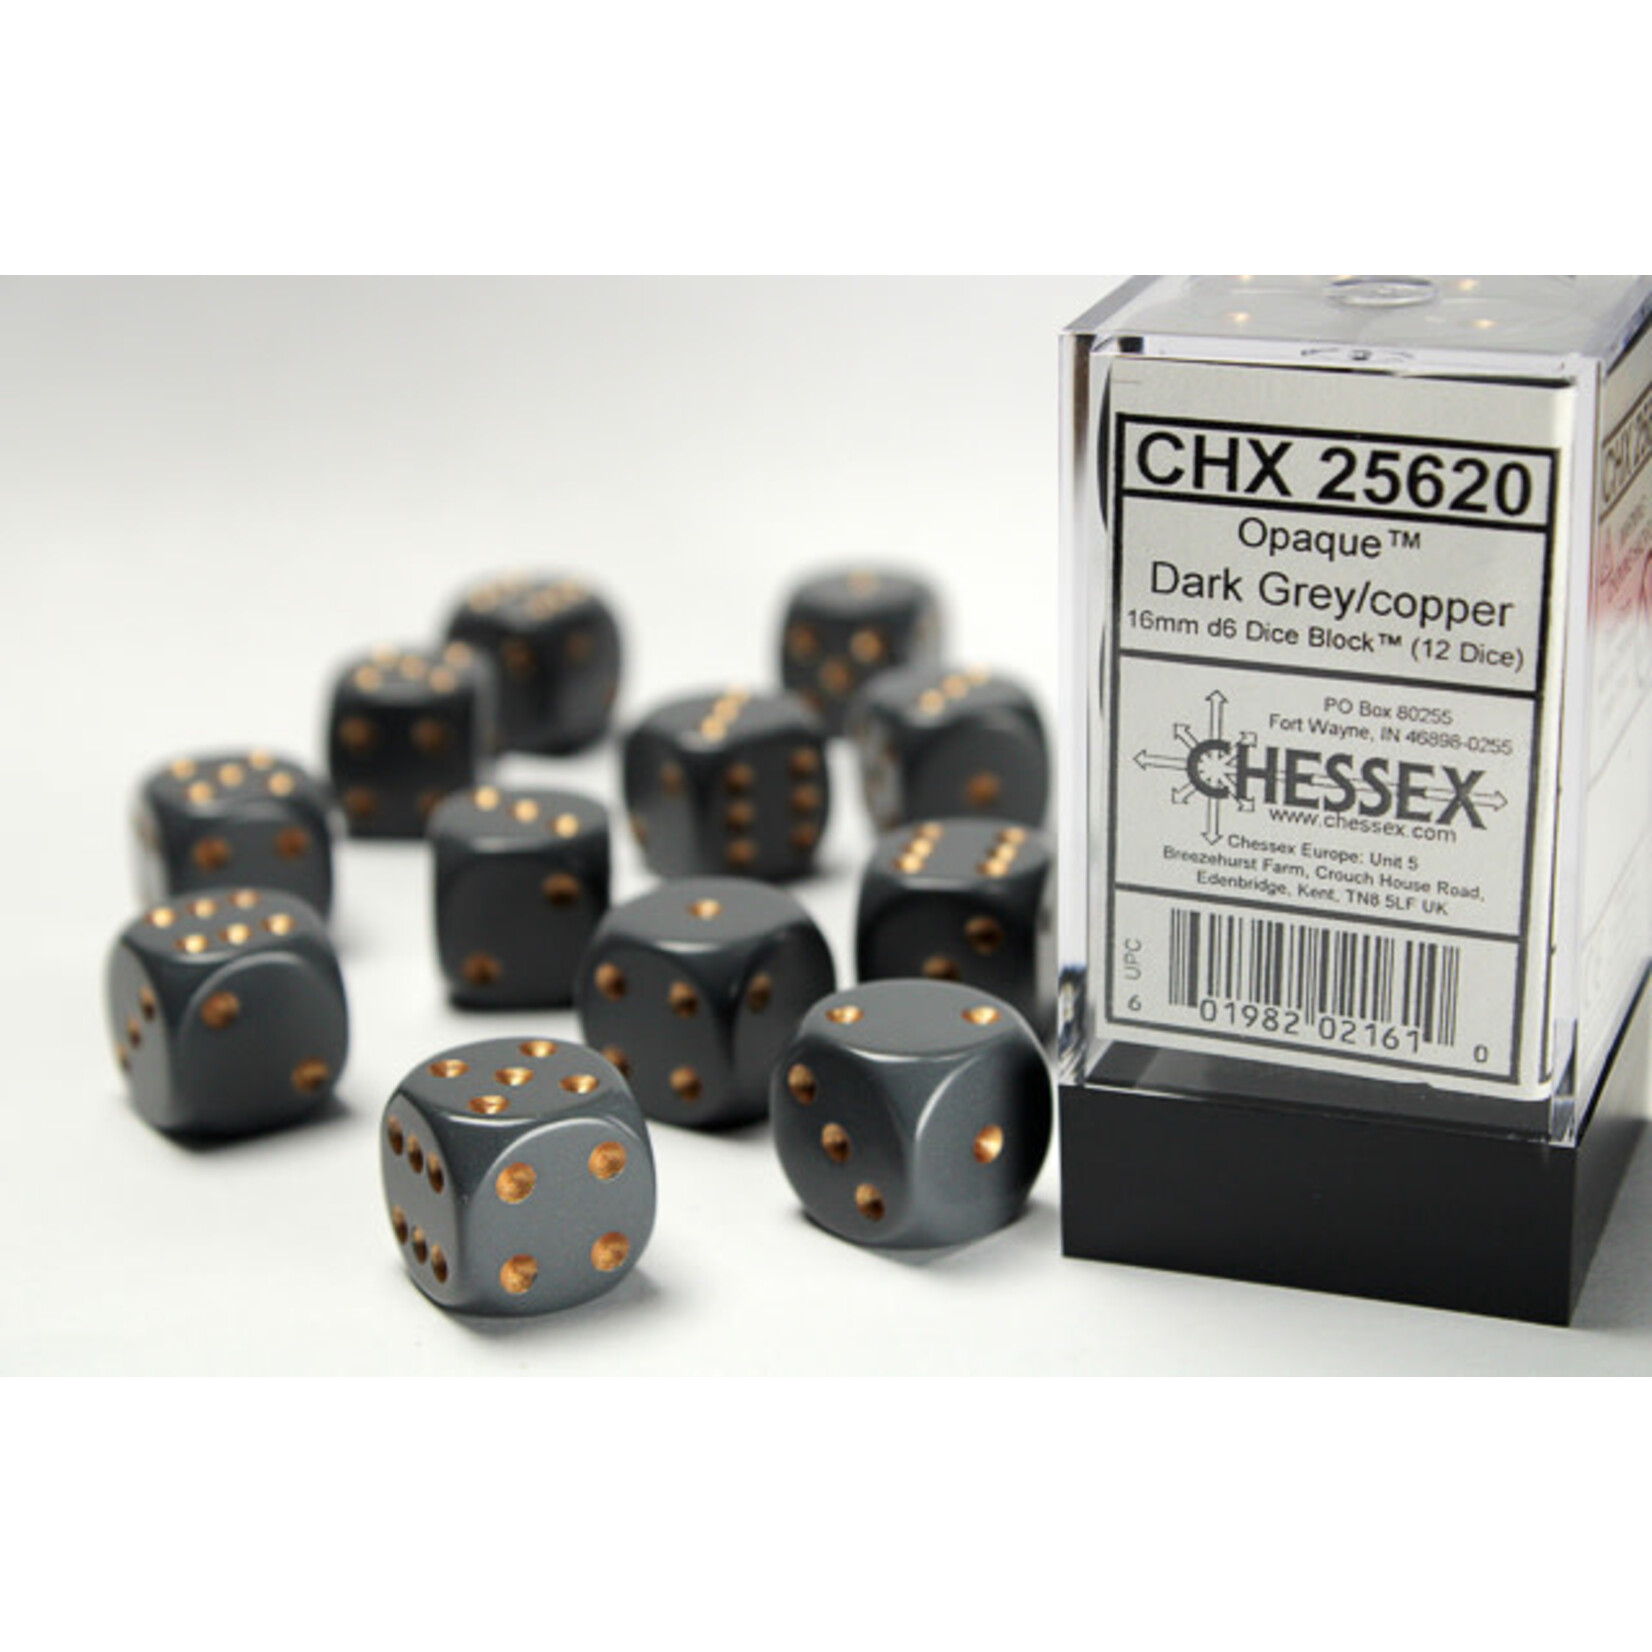 Chessex Opaque 16mm d6 Dark Grey/copper Dice Block™ (12 dice)